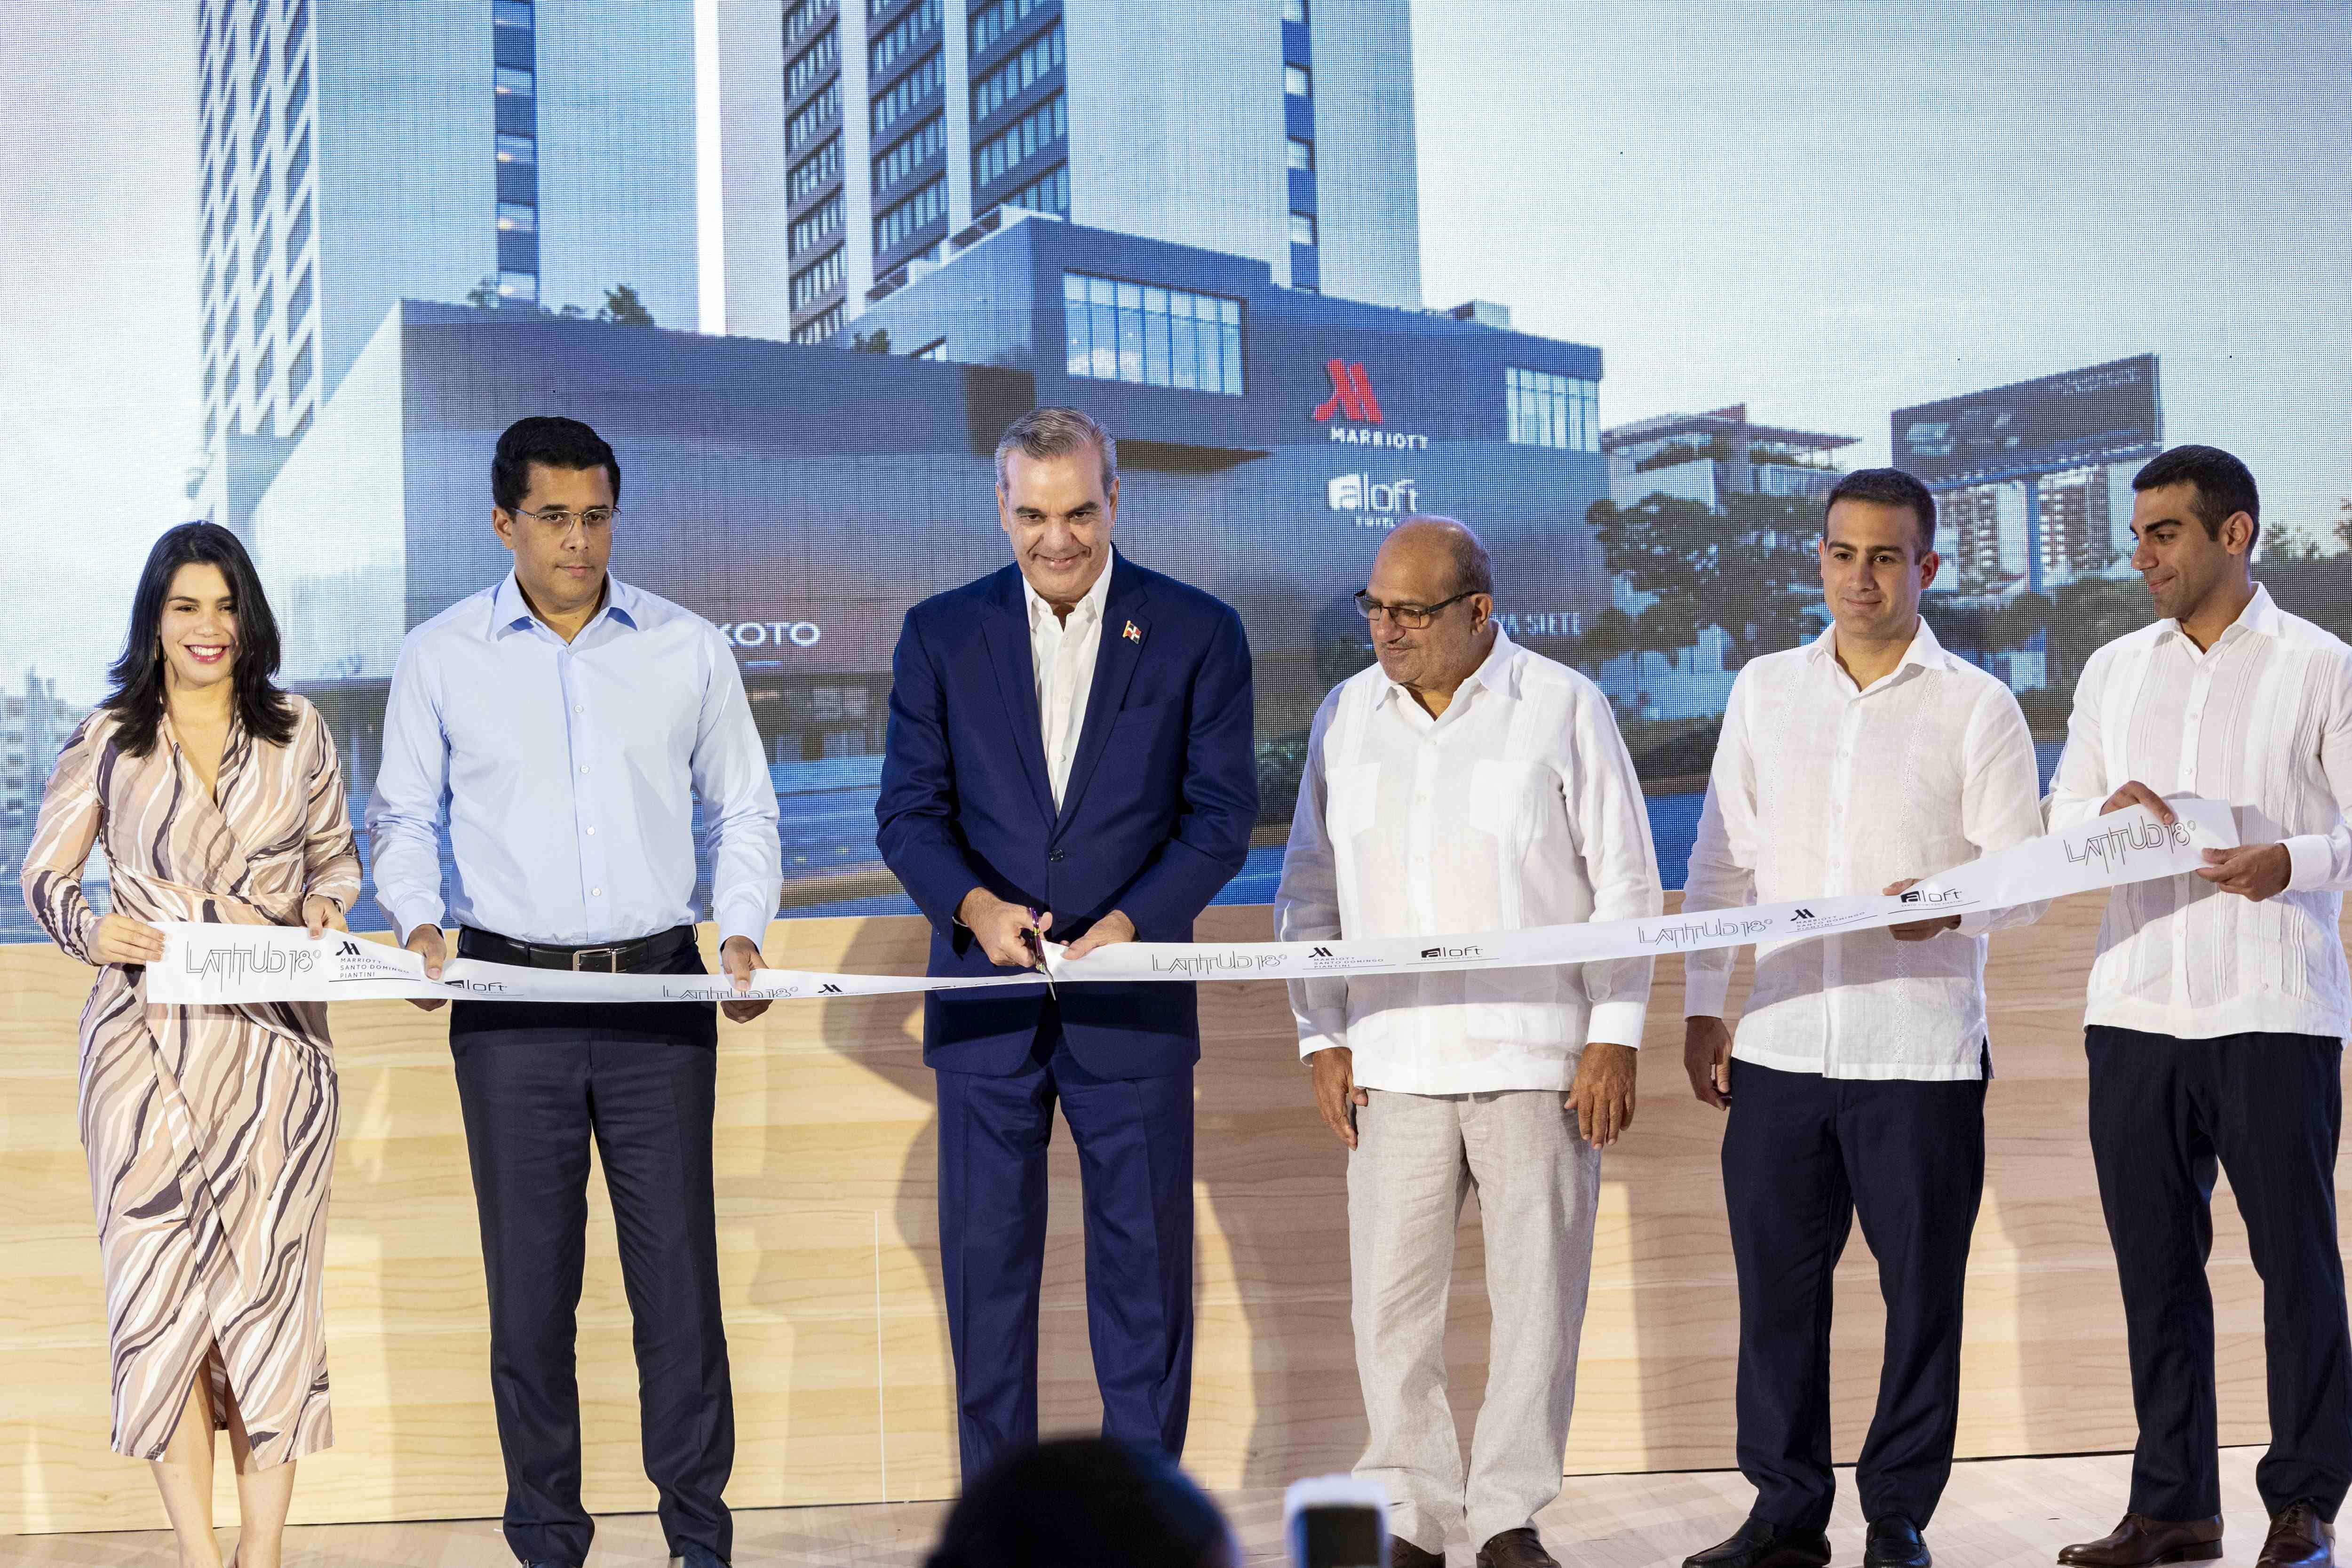 El presidente Luis Abinader corta la cinta que deja inaugurada el nuevo hotel.